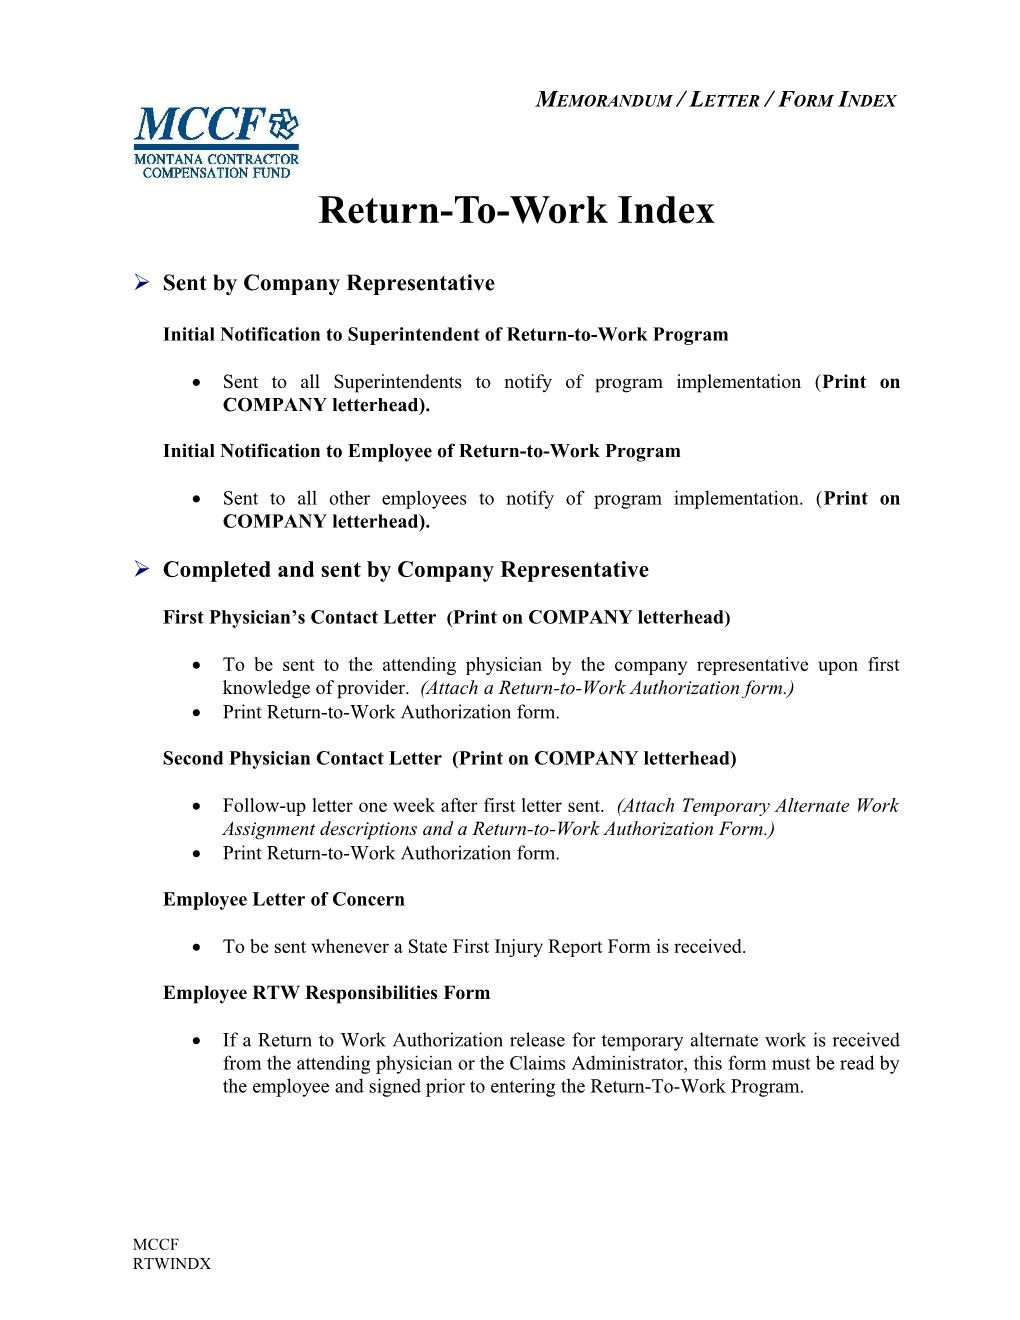 Return-To-Work Index